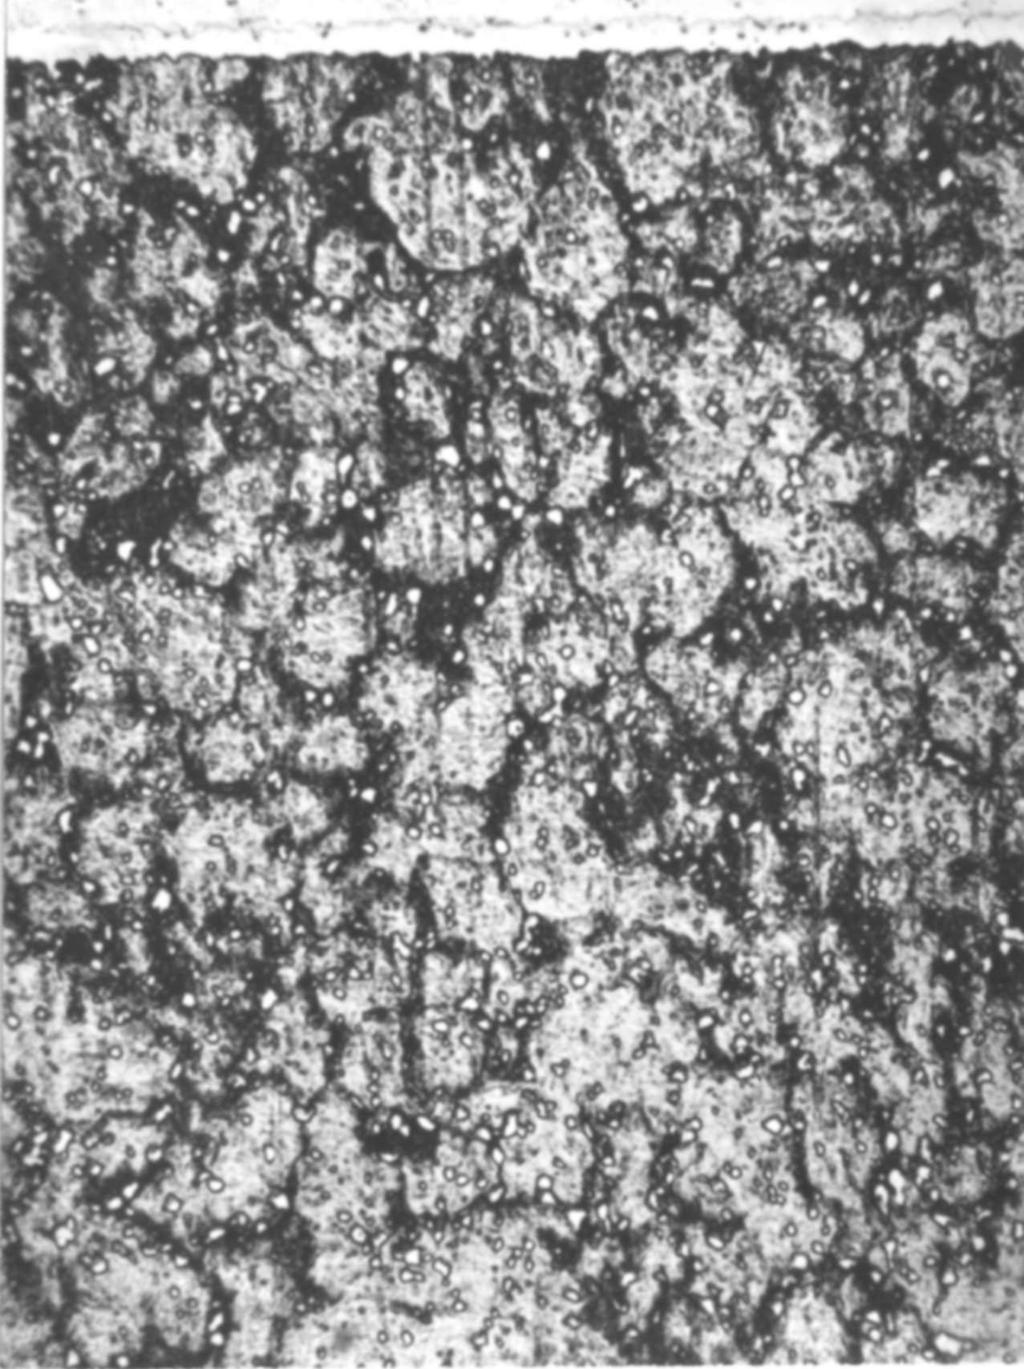 98 T R I B O L O G I A 3-2010 WYNIKI BADAŃ Budowa warstw Mikrostrukturę węglikowej warstwy chromowanej (węglikowa warstwa typu CrC), ujawnioną za pomocą trawienia nitalem szlifów metalograficznych